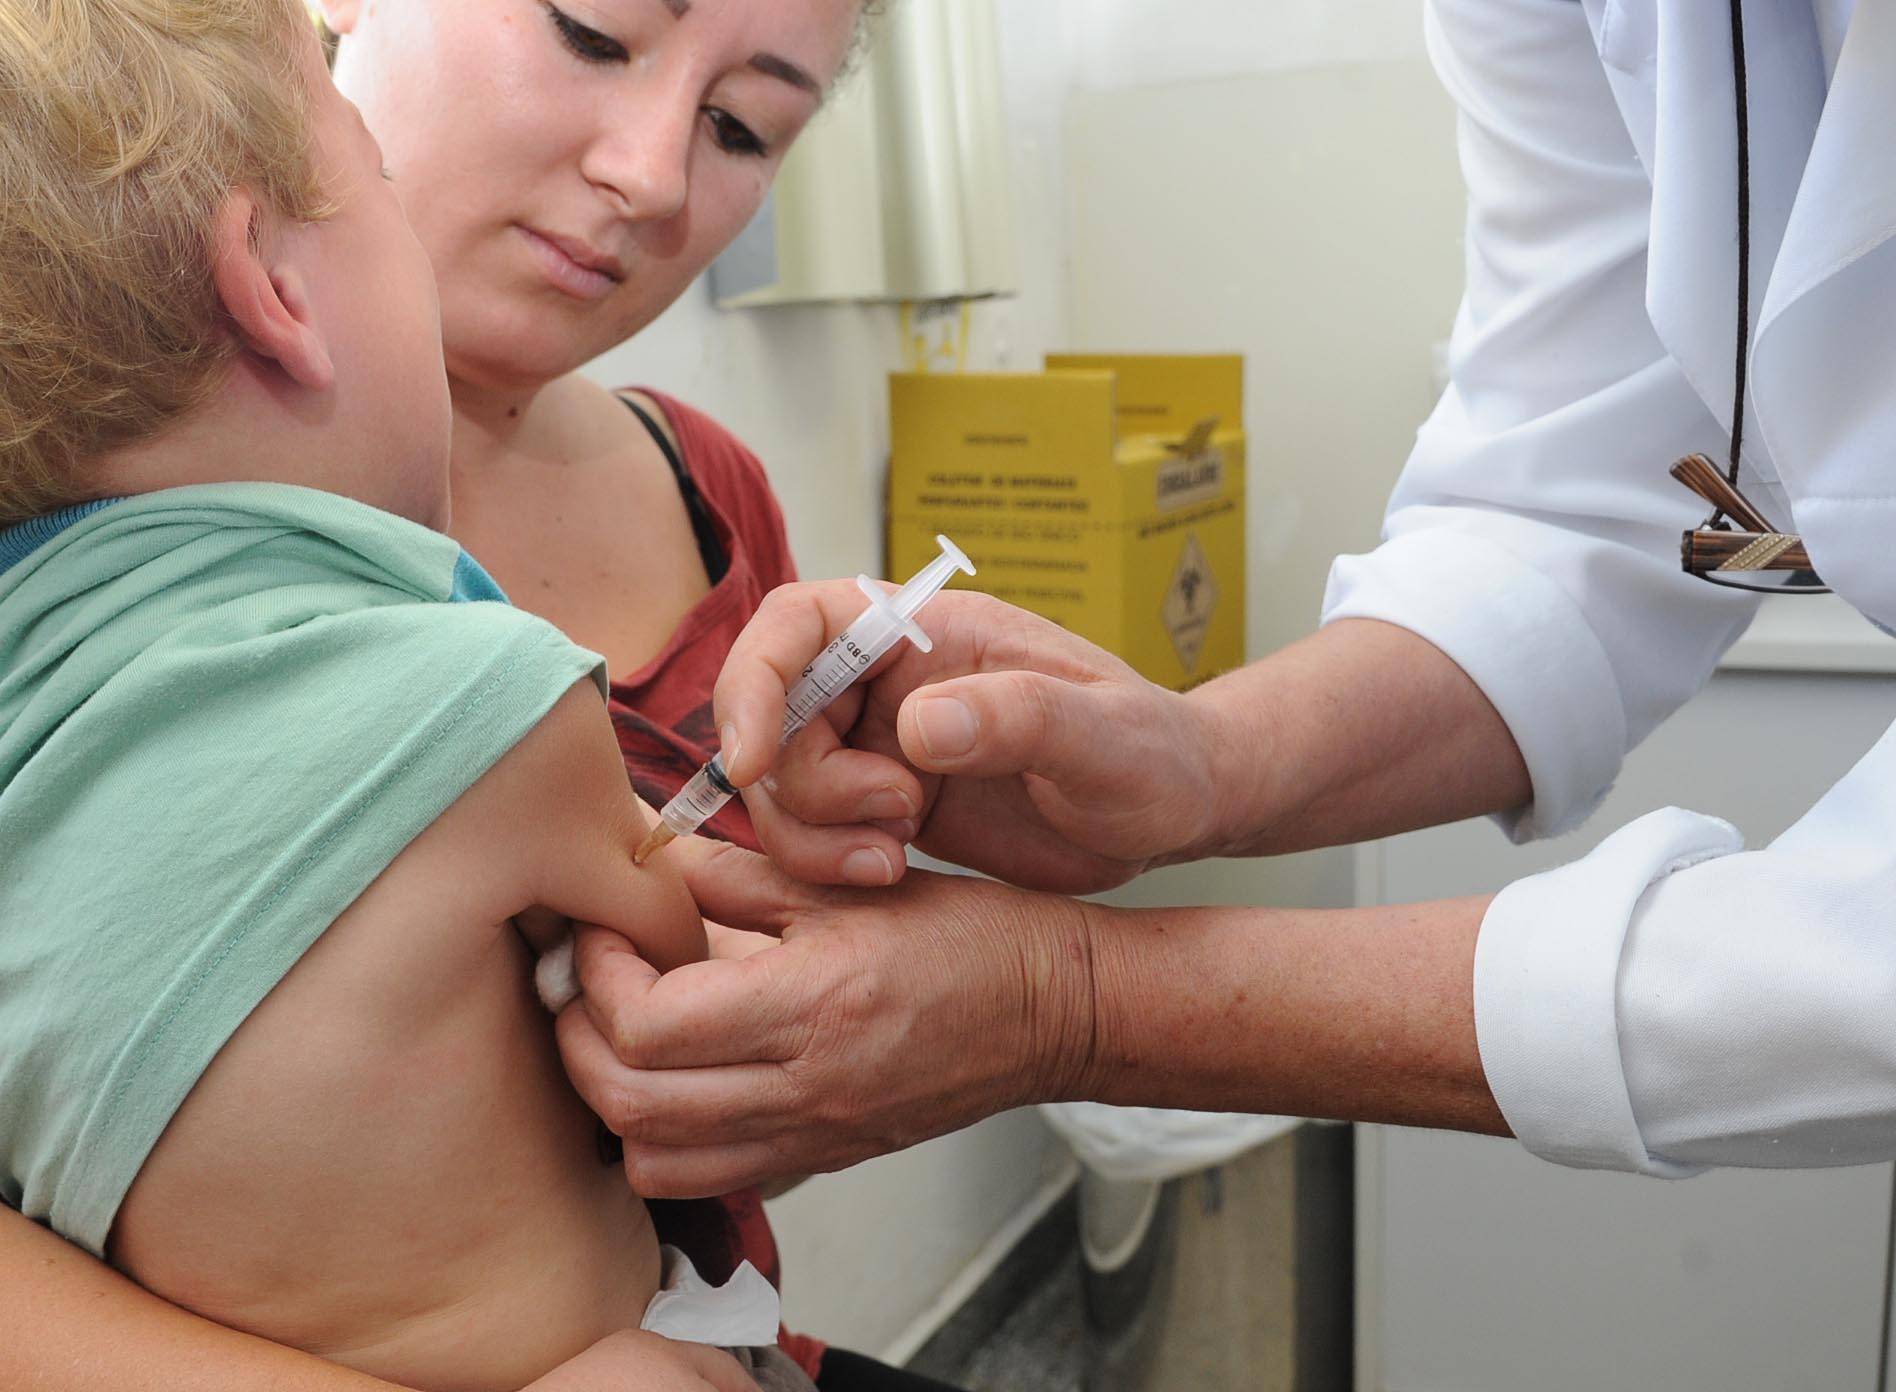  A volta de doenças como Sarampo e Polio reforçam a importância de vacinas